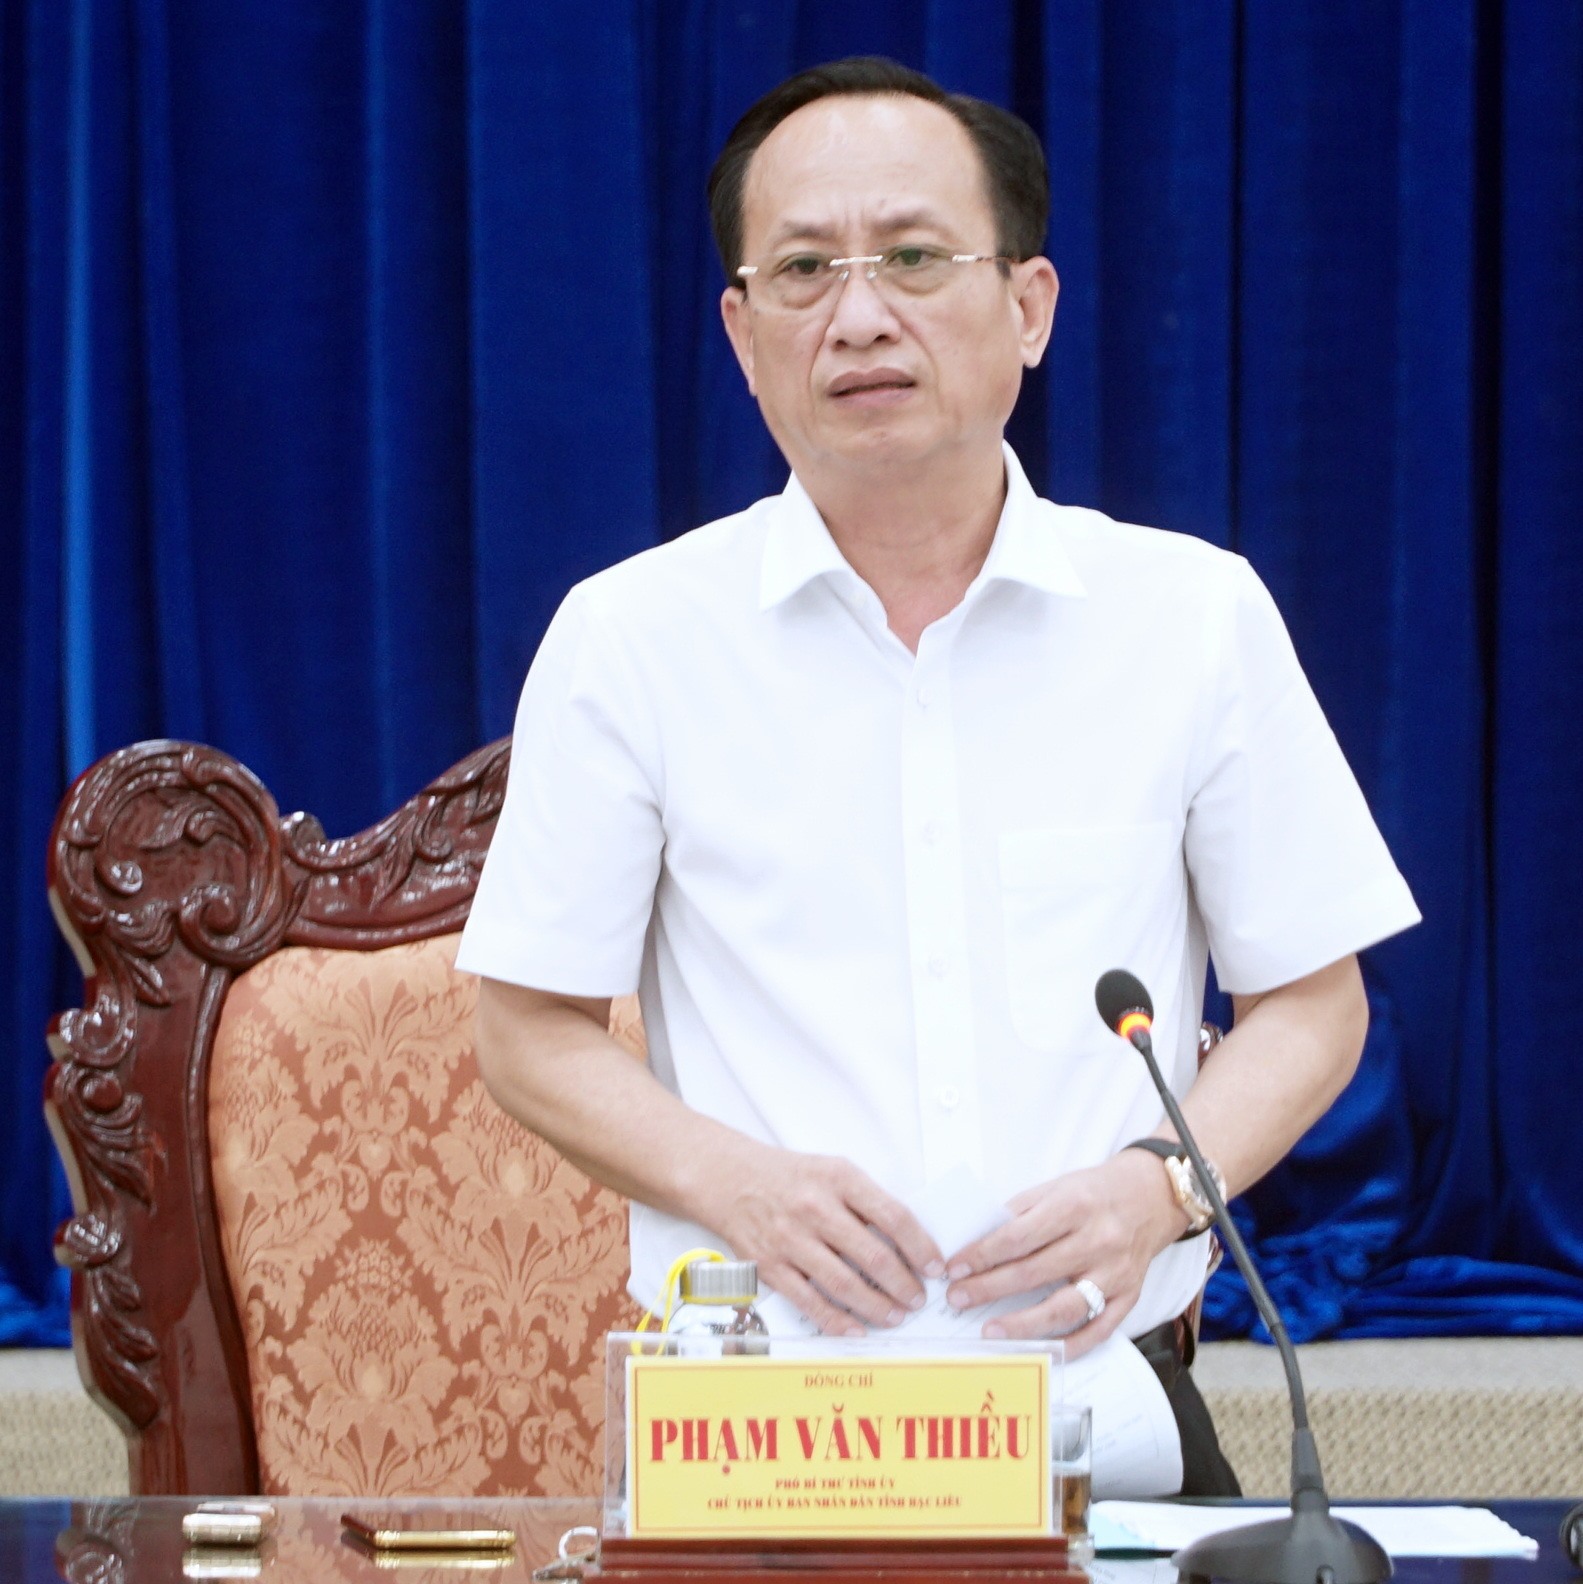 Chủ tịch UBND tỉnh Bạc Liêu Phạm Văn Thiều chỉ đạo làm rõ, sai đến đâu, xử đến đó không thể để lãng phí mãi được. Ảnh: Nhật Hồ